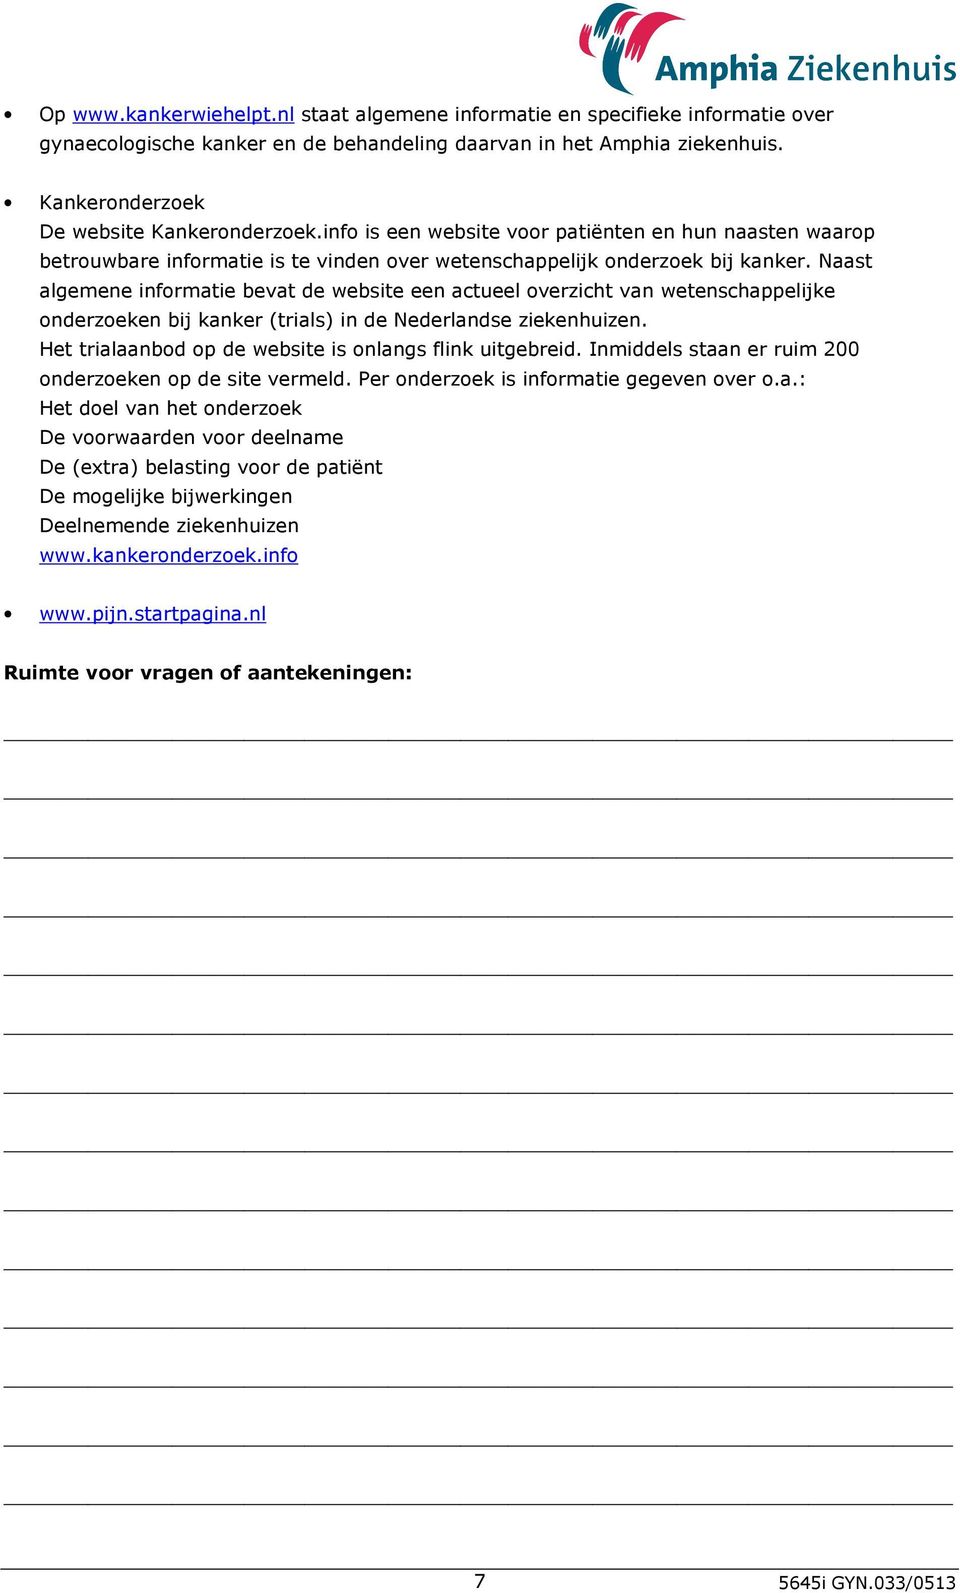 Naast algemene informatie bevat de website een actueel overzicht van wetenschappelijke onderzoeken bij kanker (trials) in de Nederlandse ziekenhuizen.